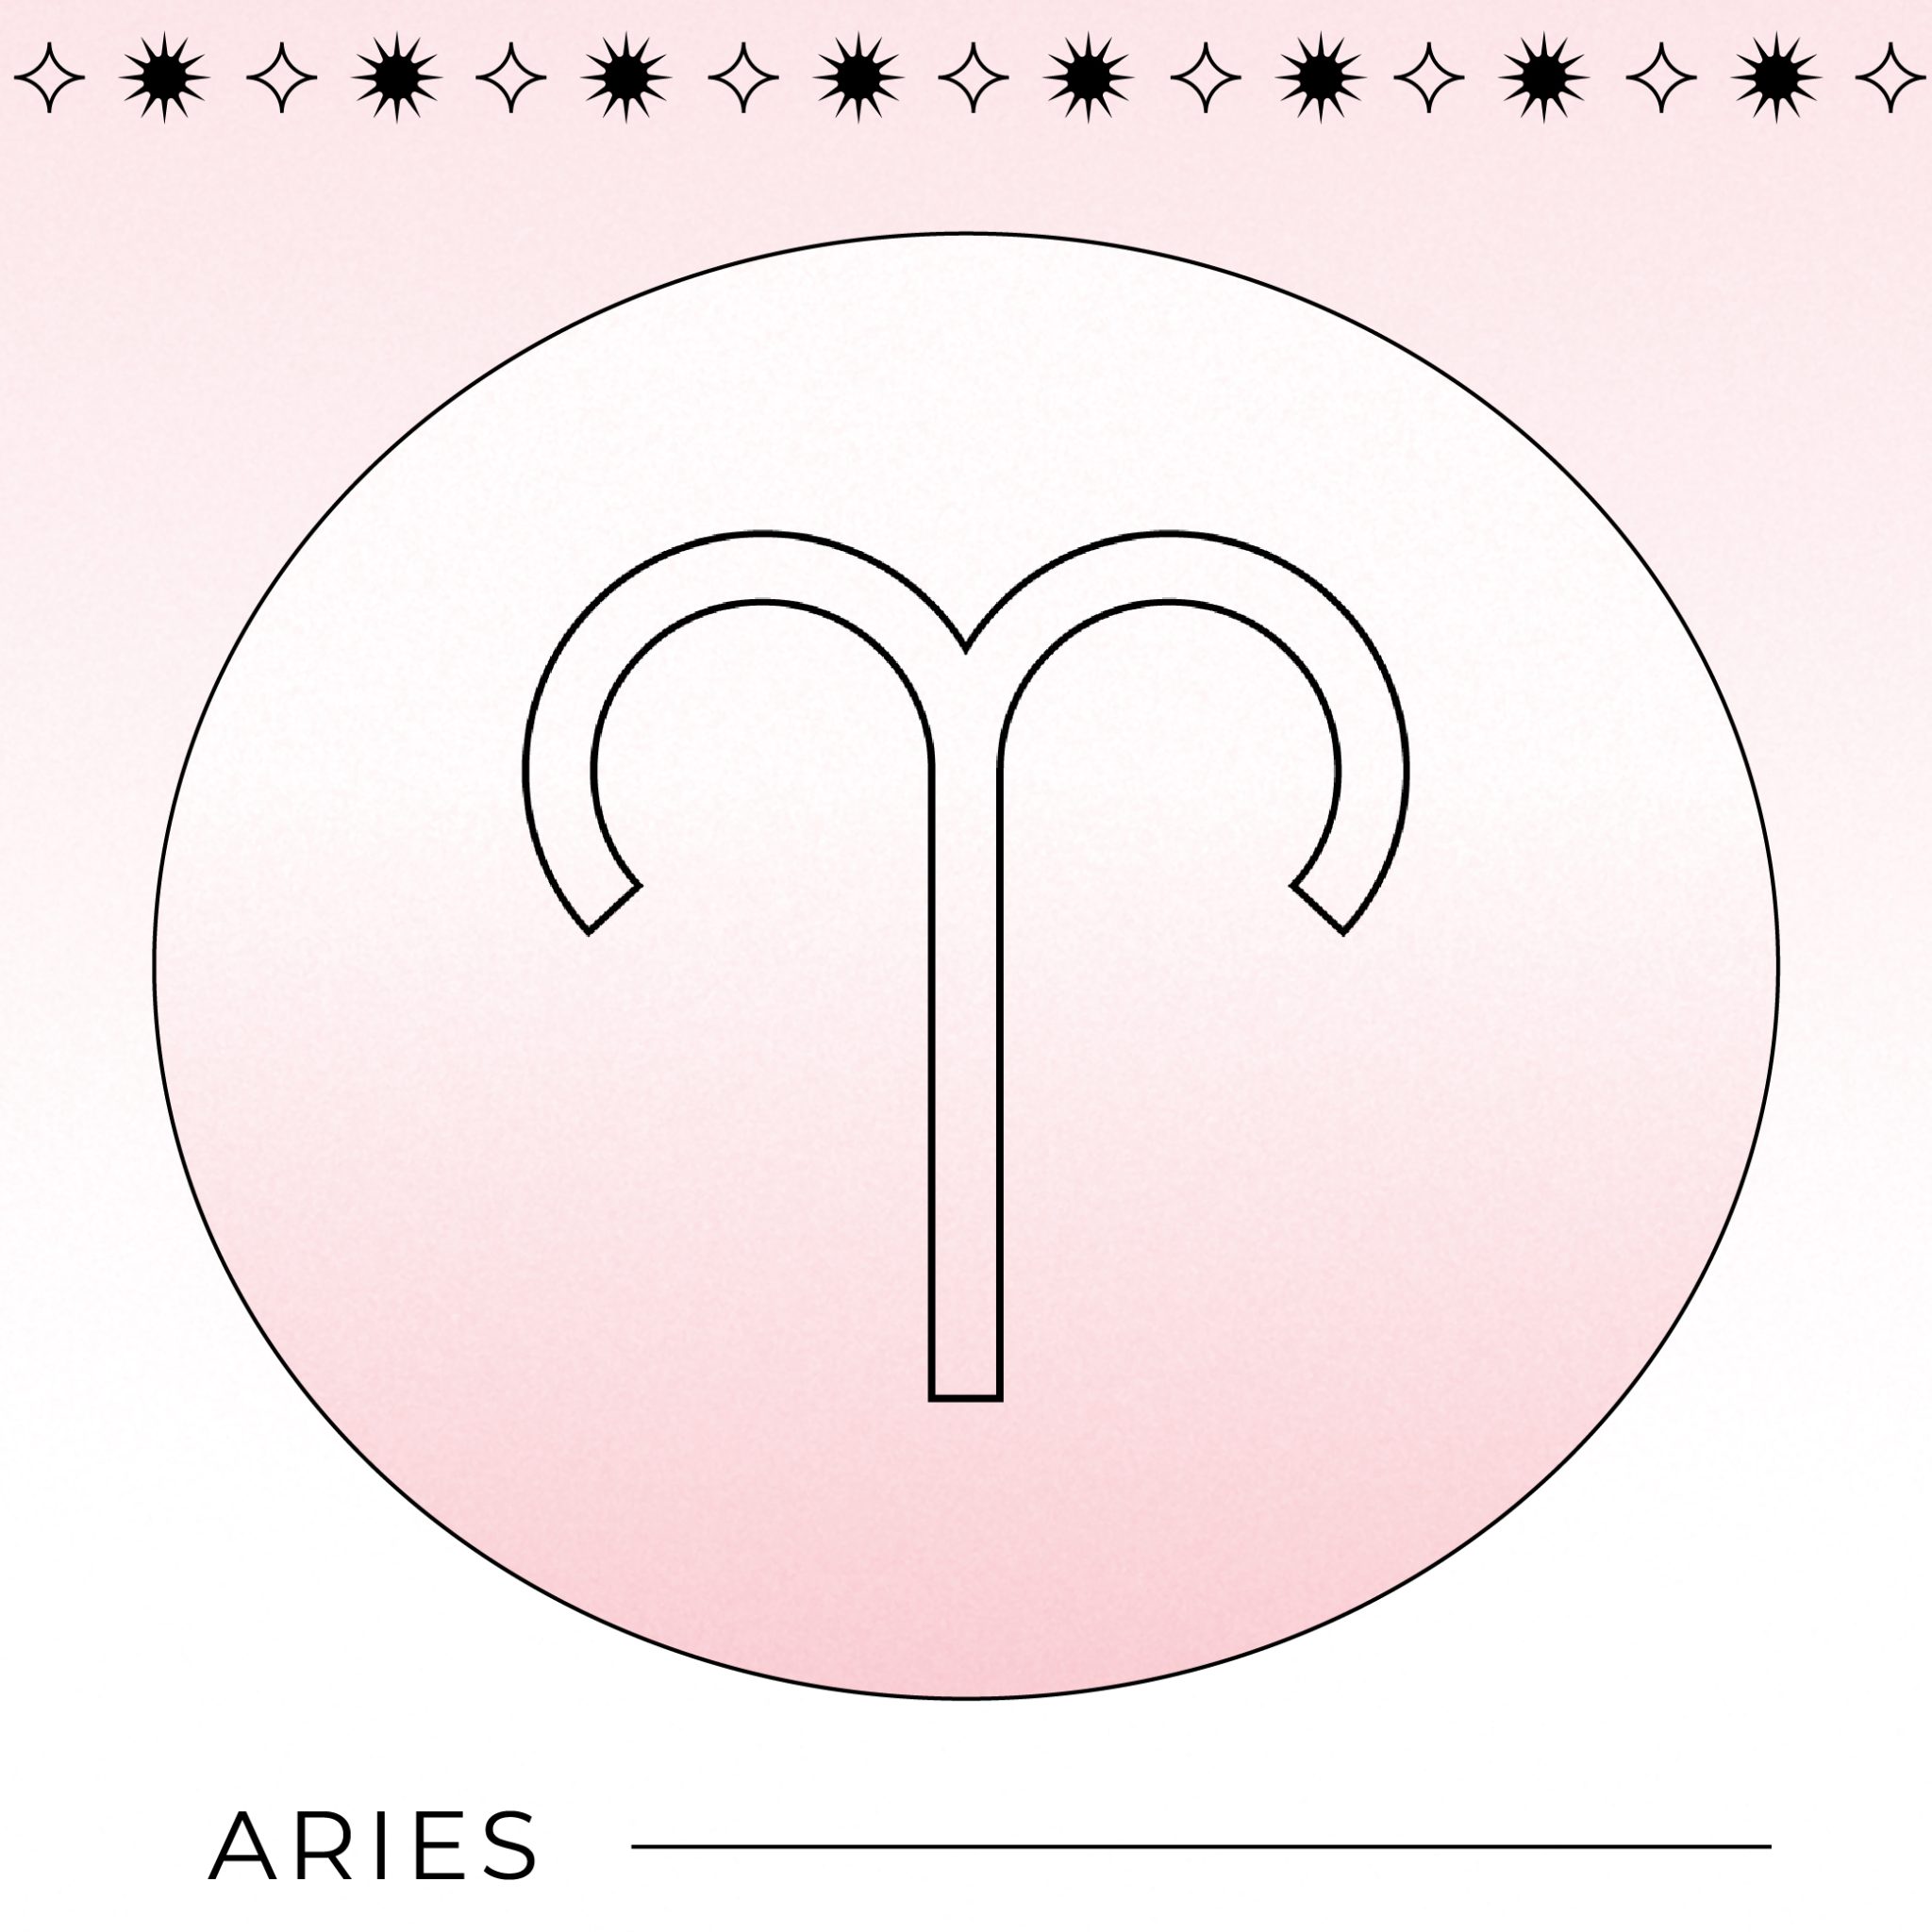 Aries 2048x2048 